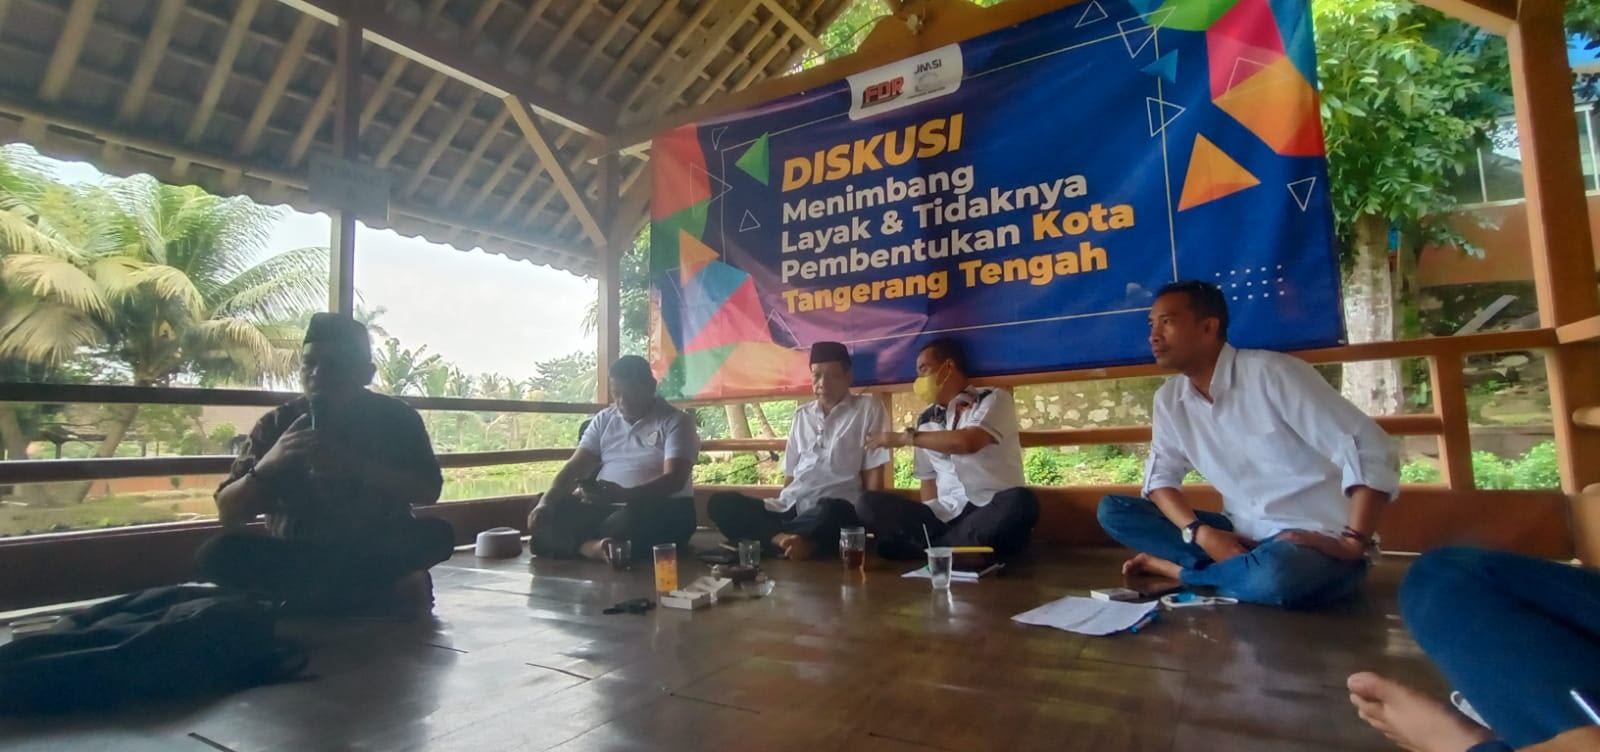 JMSI Banten dan Forum Diskusi Rakyat Gelar Diskusi Pemekaran Tangerang Tengah